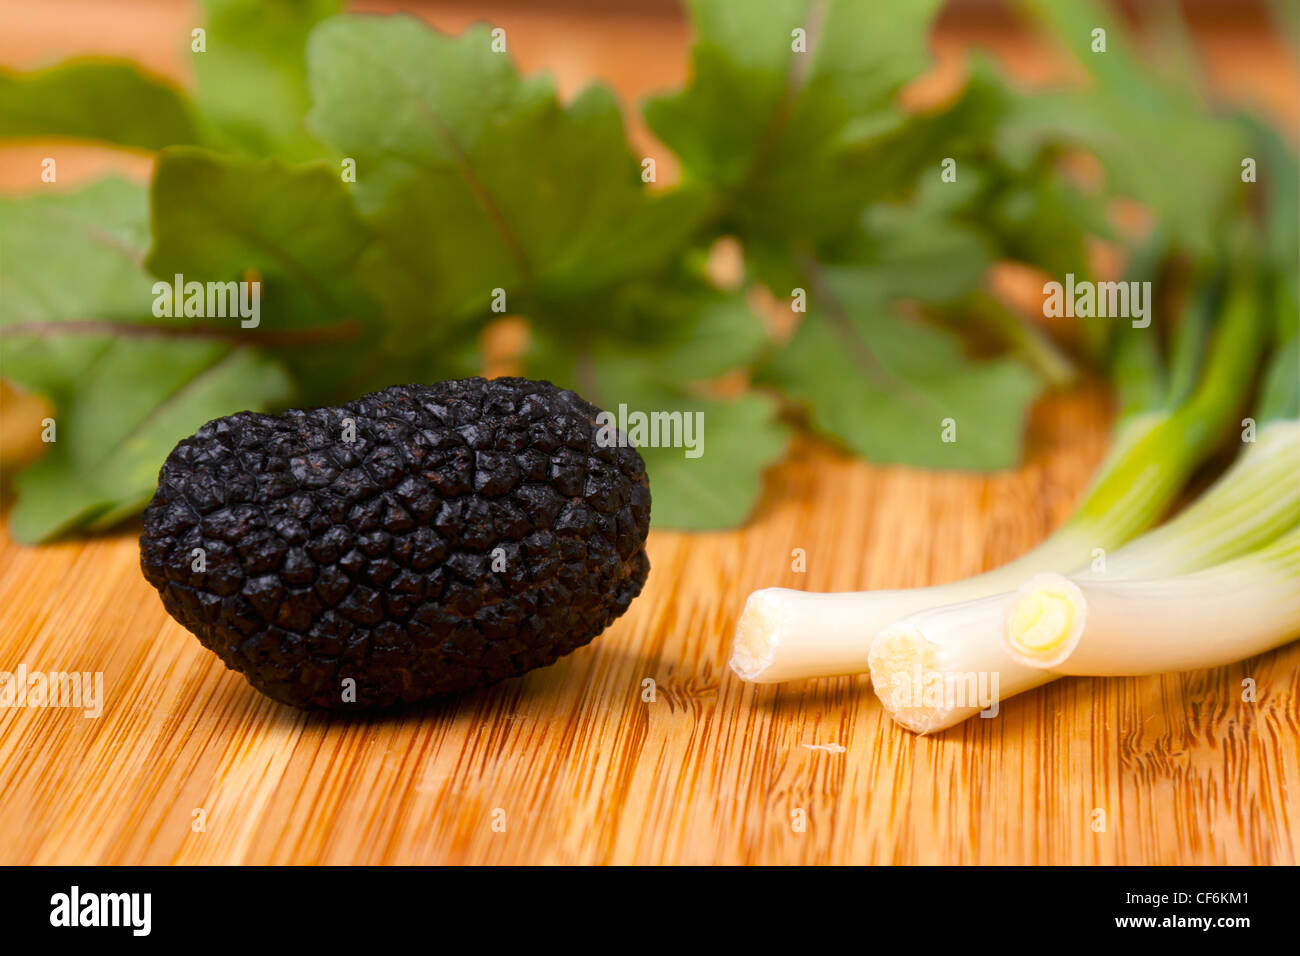 Black truffle with stone leek and rukola on wooden background Stock Photo